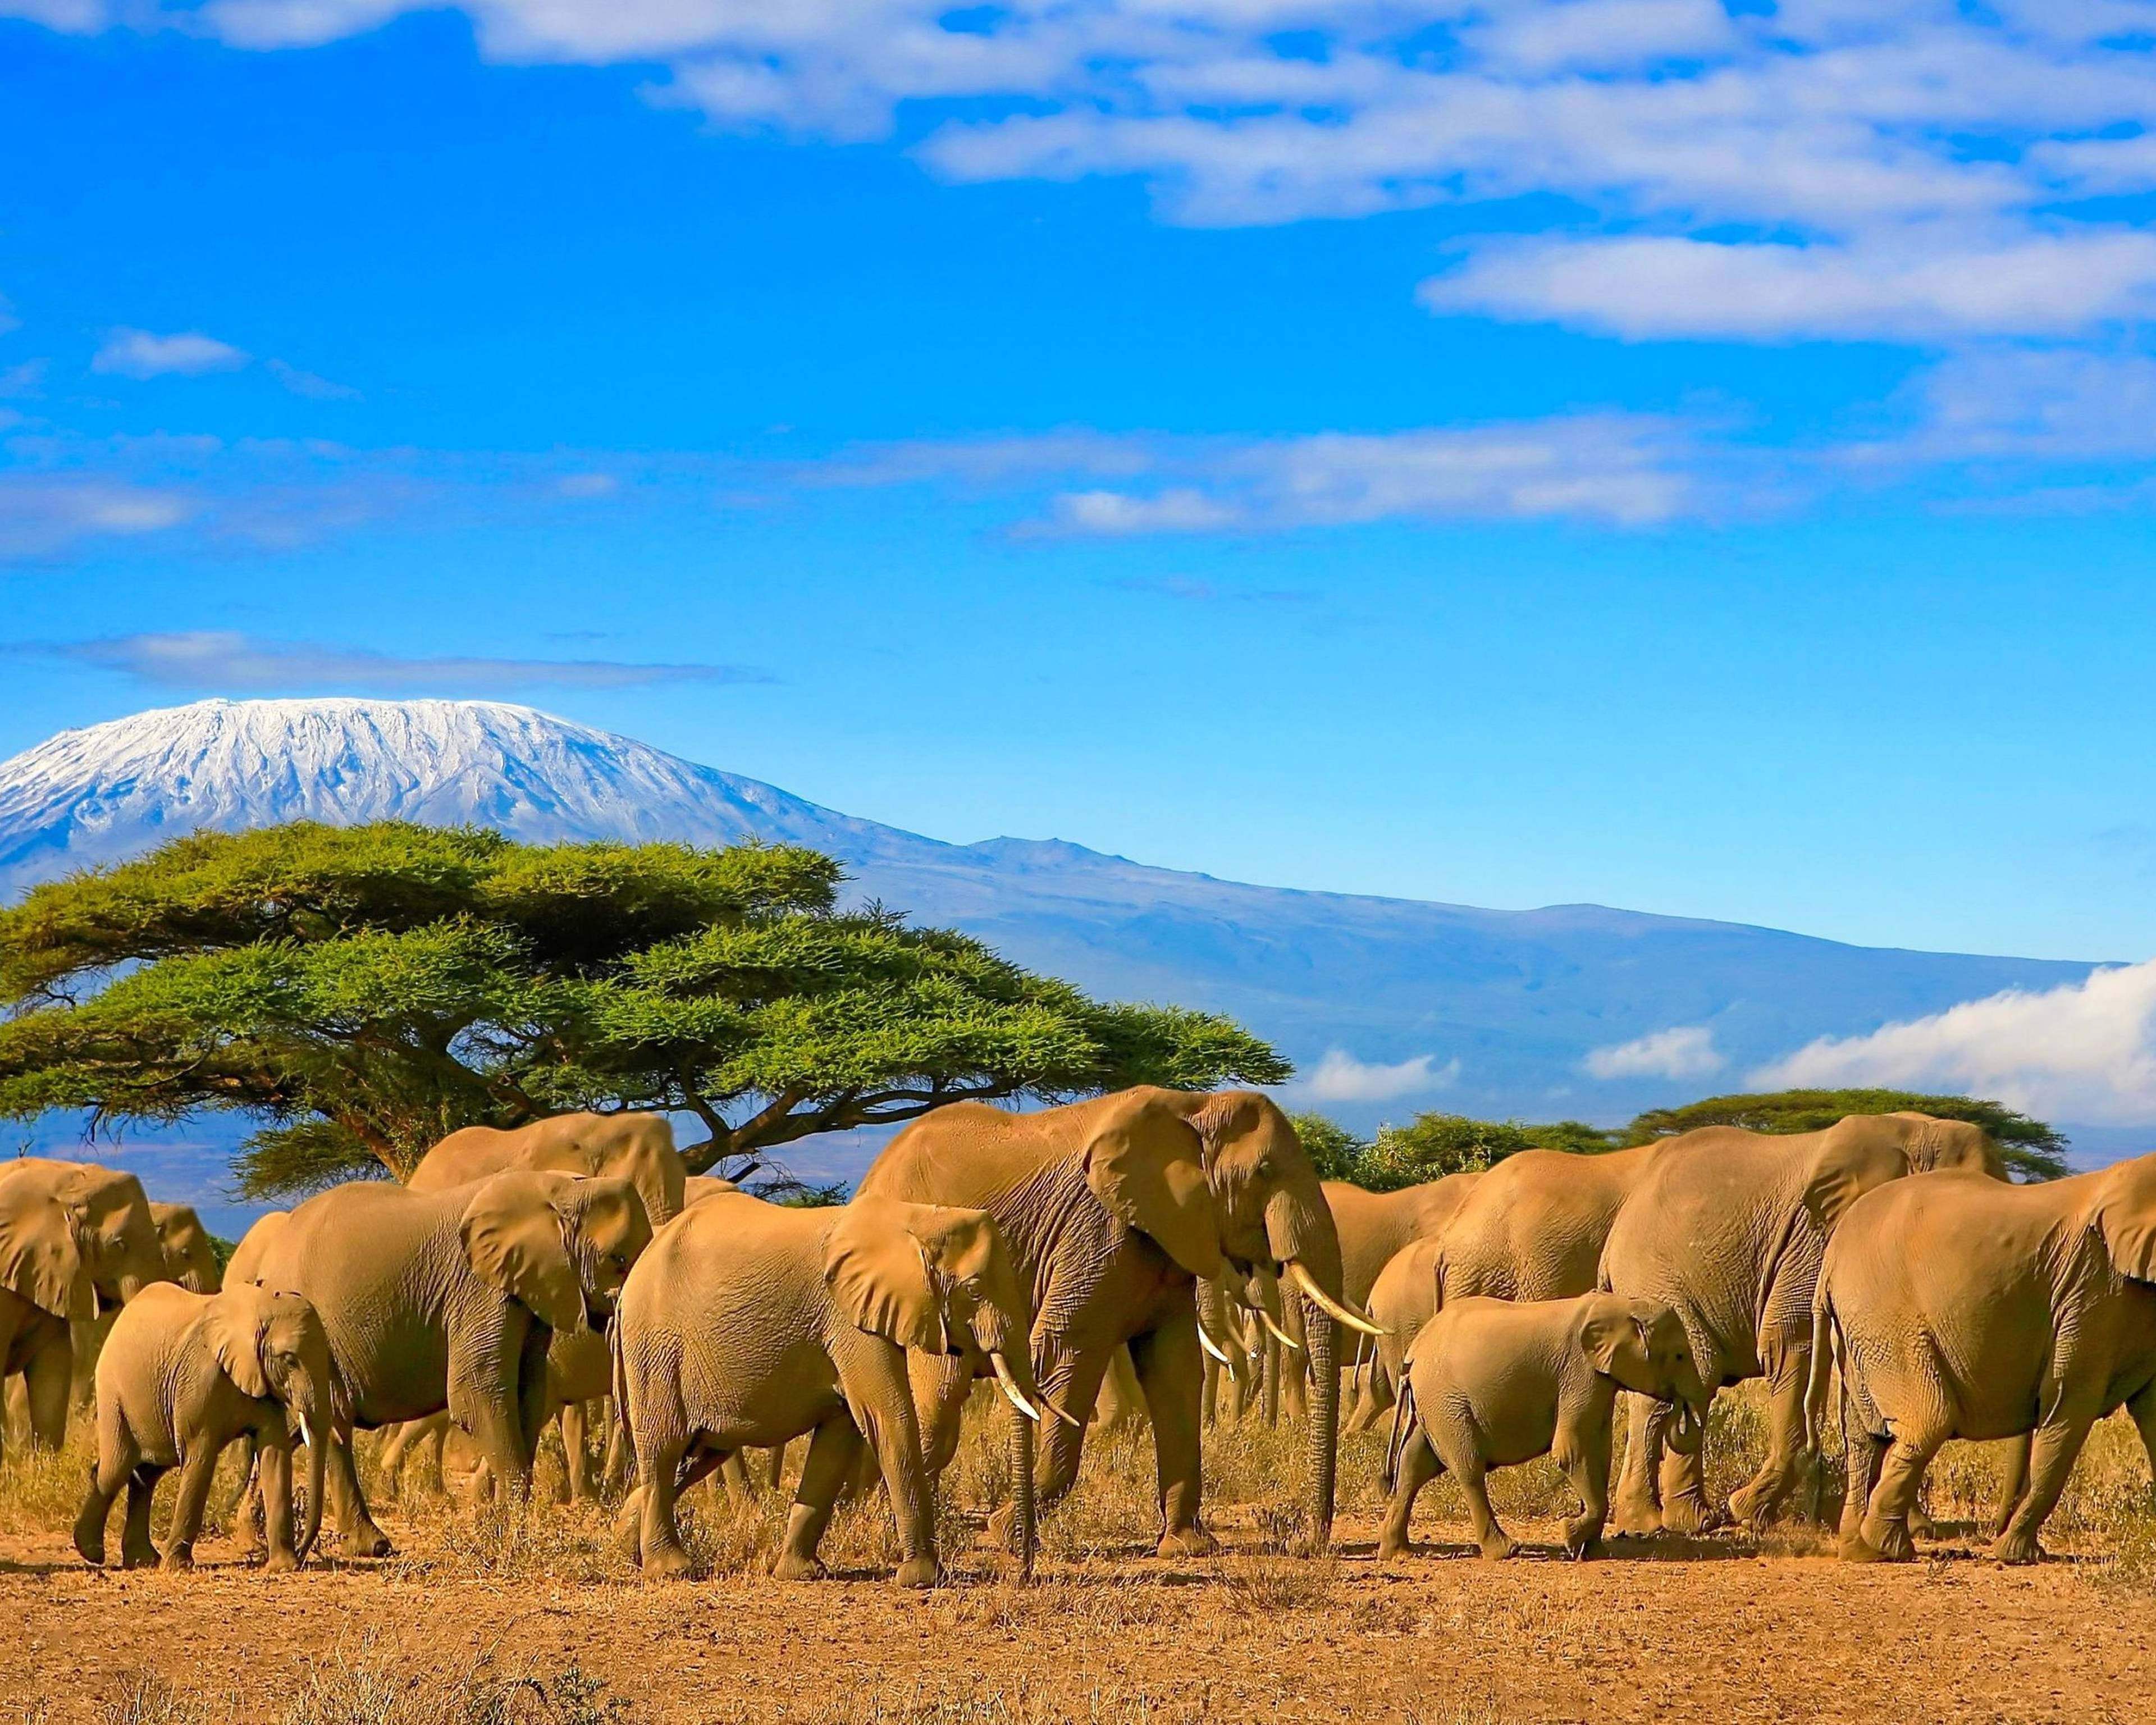 Beklimming Kilimanjaro en avontuurlijke Safari in de wildparken